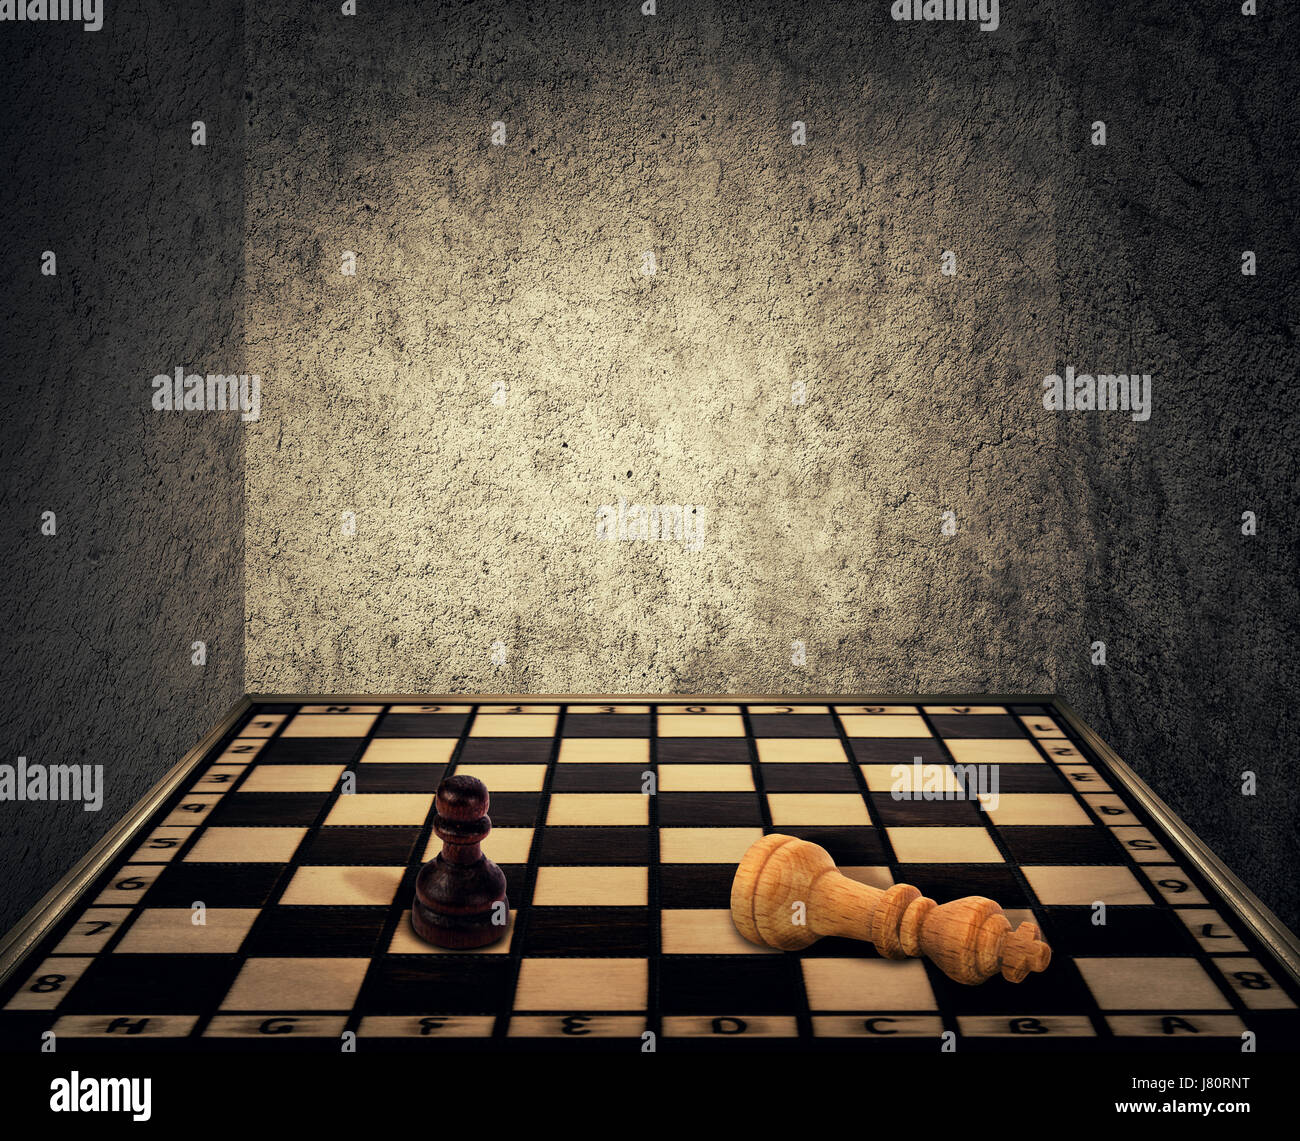 Habitación mágica con un tablero de ajedrez baja rodeado por paredes de hormigón como las limitaciones y el rey pedazo cayendo golpeados delante del peón figura. Foto de stock